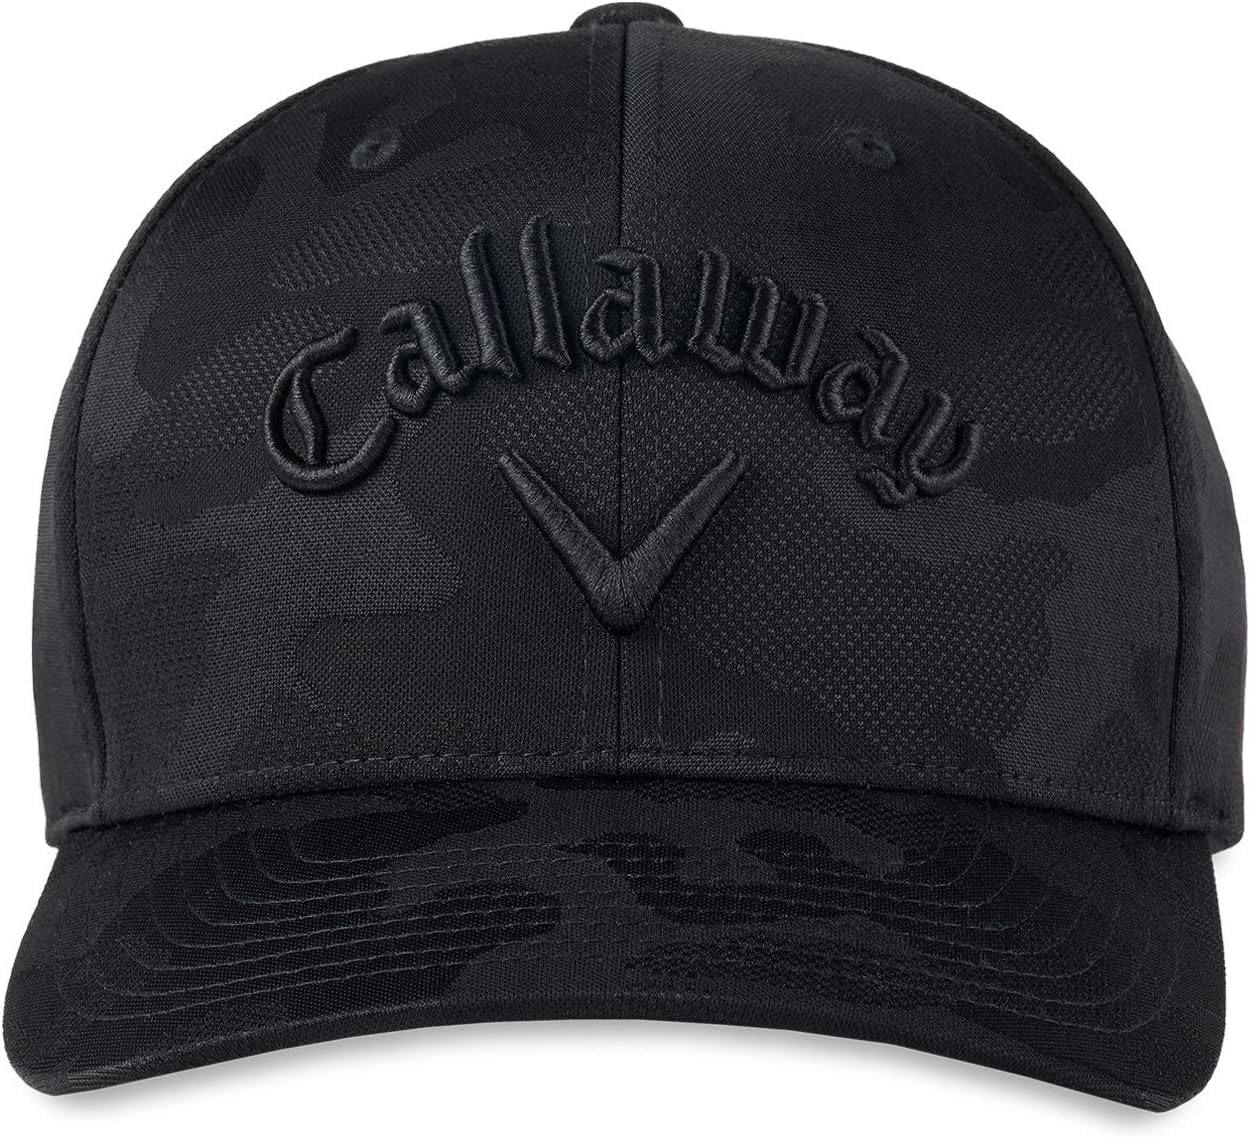 Callaway Golf Camo Flexfit Snapback Cap